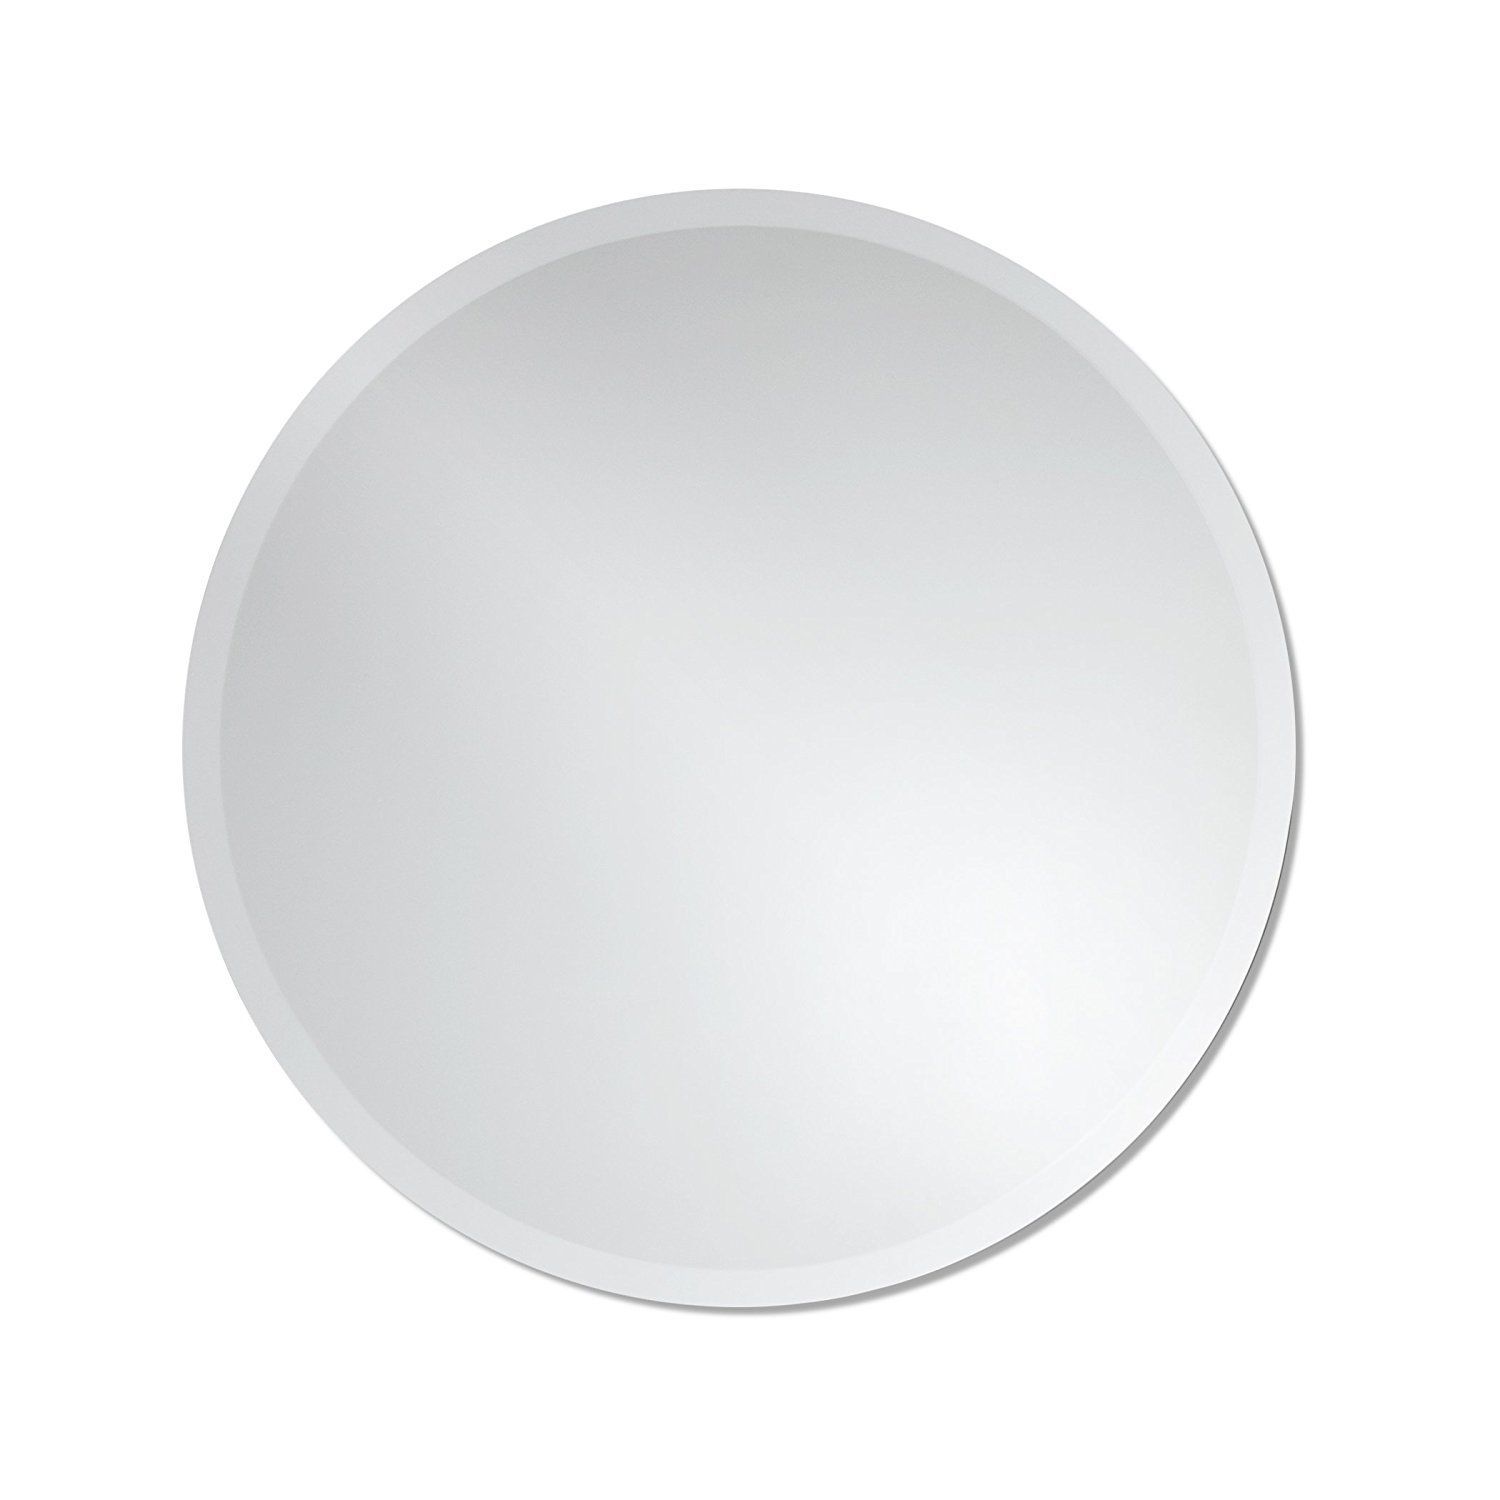 Amazon: Round Frameless Wall Mirror | Bathroom, Vanity, Bedroom Regarding Round Frameless Bathroom Wall Mirrors (Photo 9 of 15)